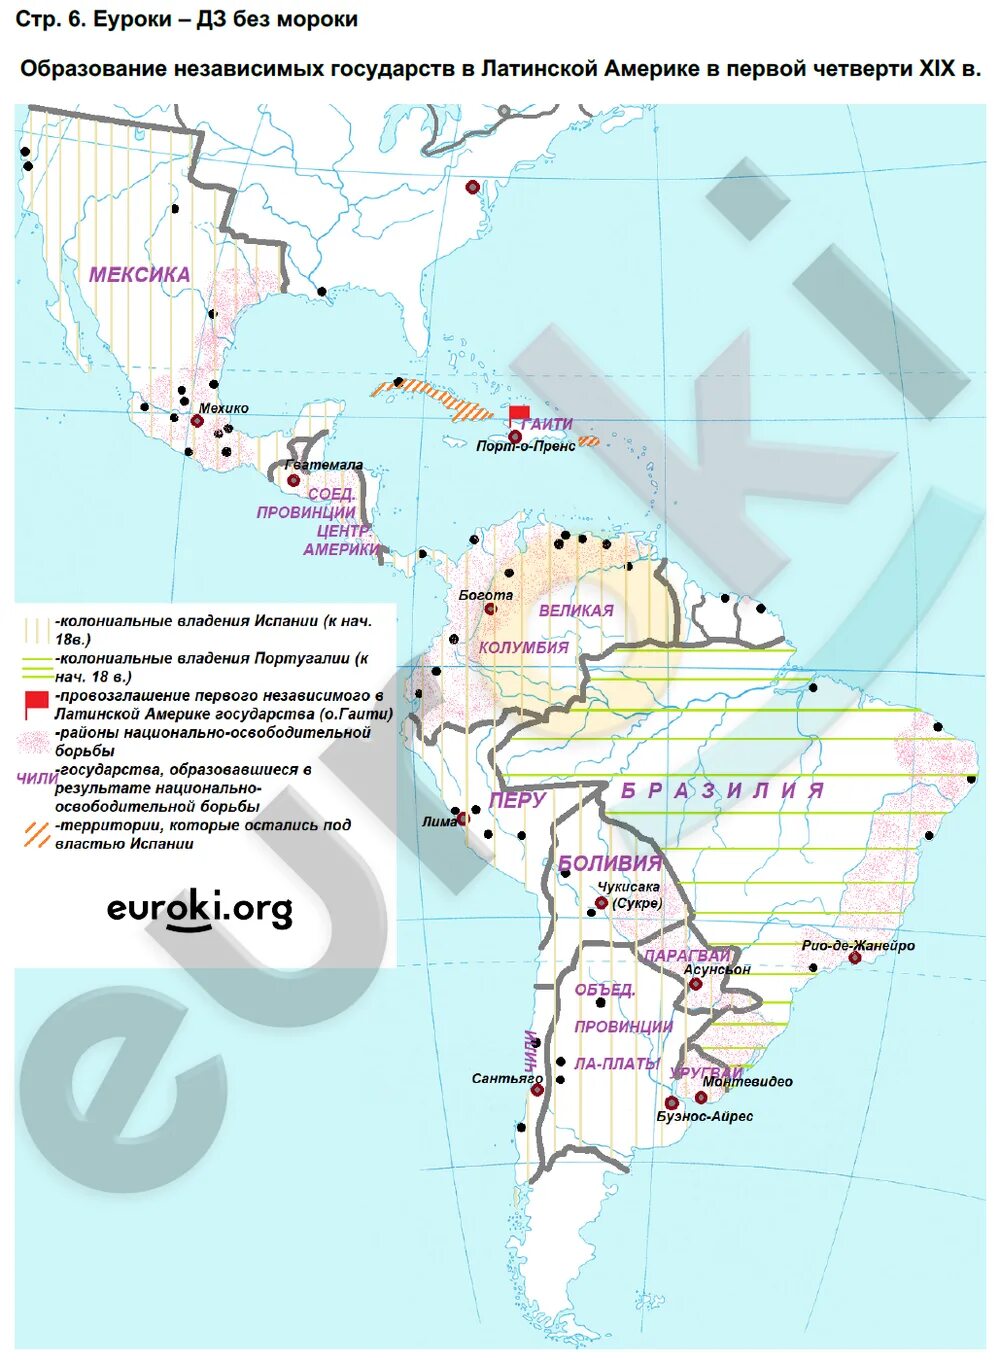 Латинская америка контурная карта 10 11. Образование независимых государств в Латинской Америке карта. Латинская Америка в конце 19 века карта. Латинская Америка 19 века карта контурная. Латинская Америка к началу 19 века карта.